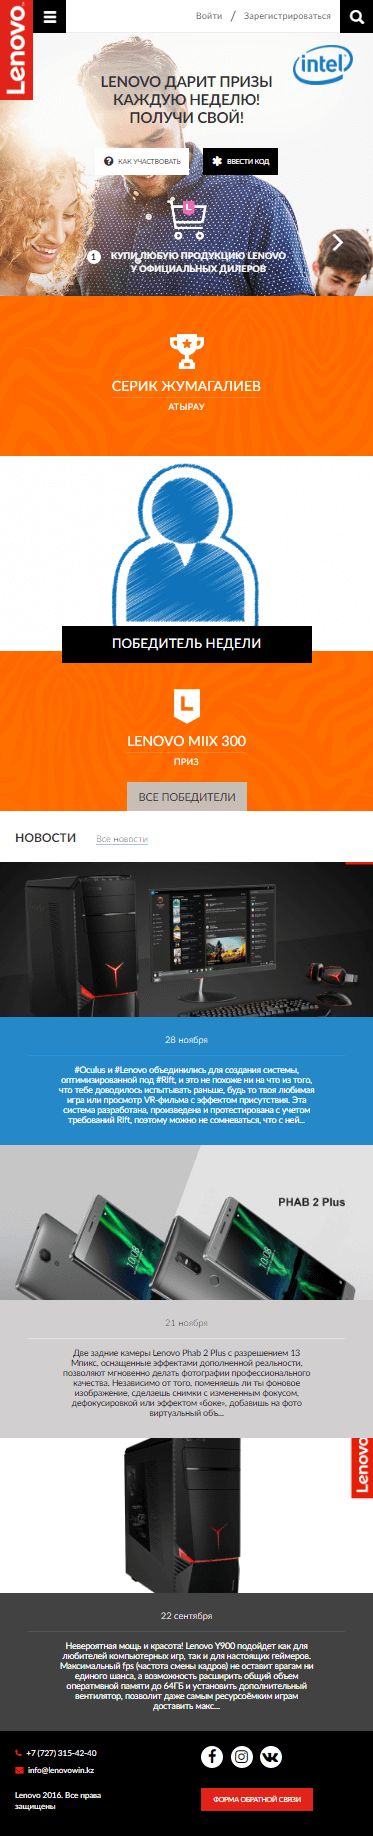 Промо - сайт для розыгрыша продукции Lenovo